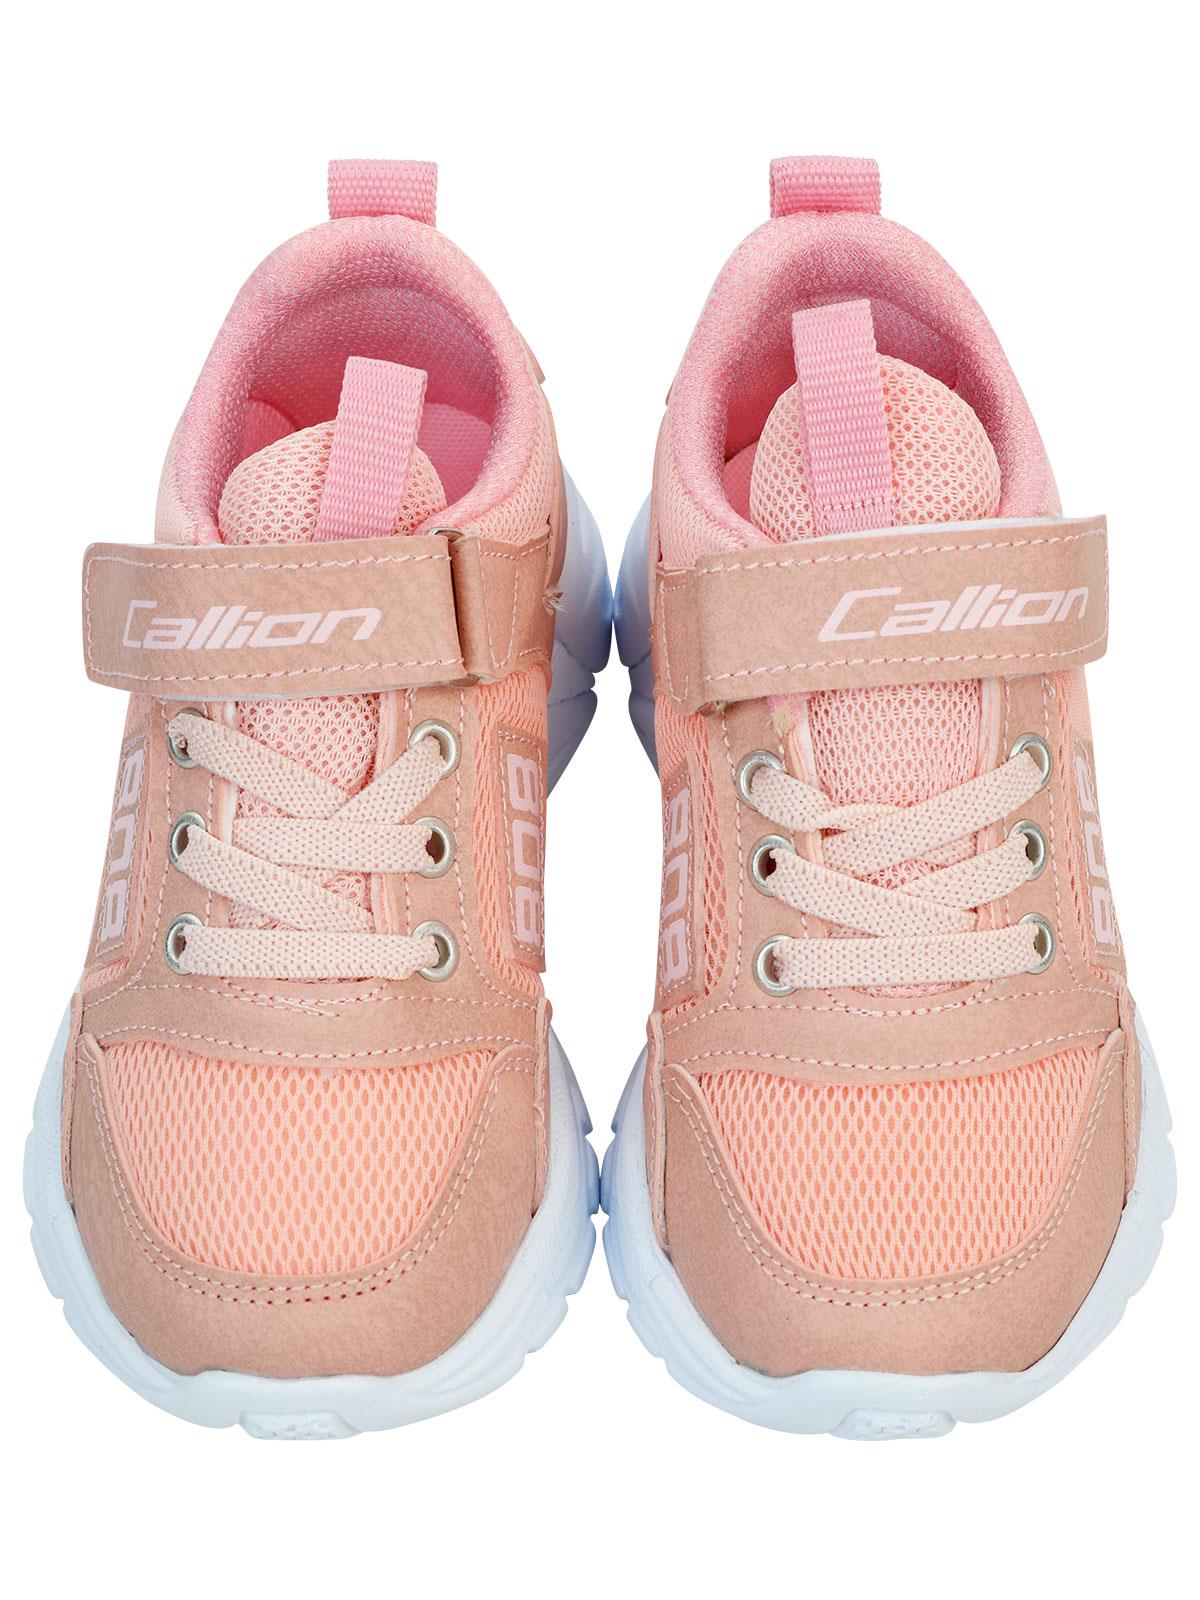 Callion Kız Çocuk Spor Ayakkabı 31-35 Numara Somon